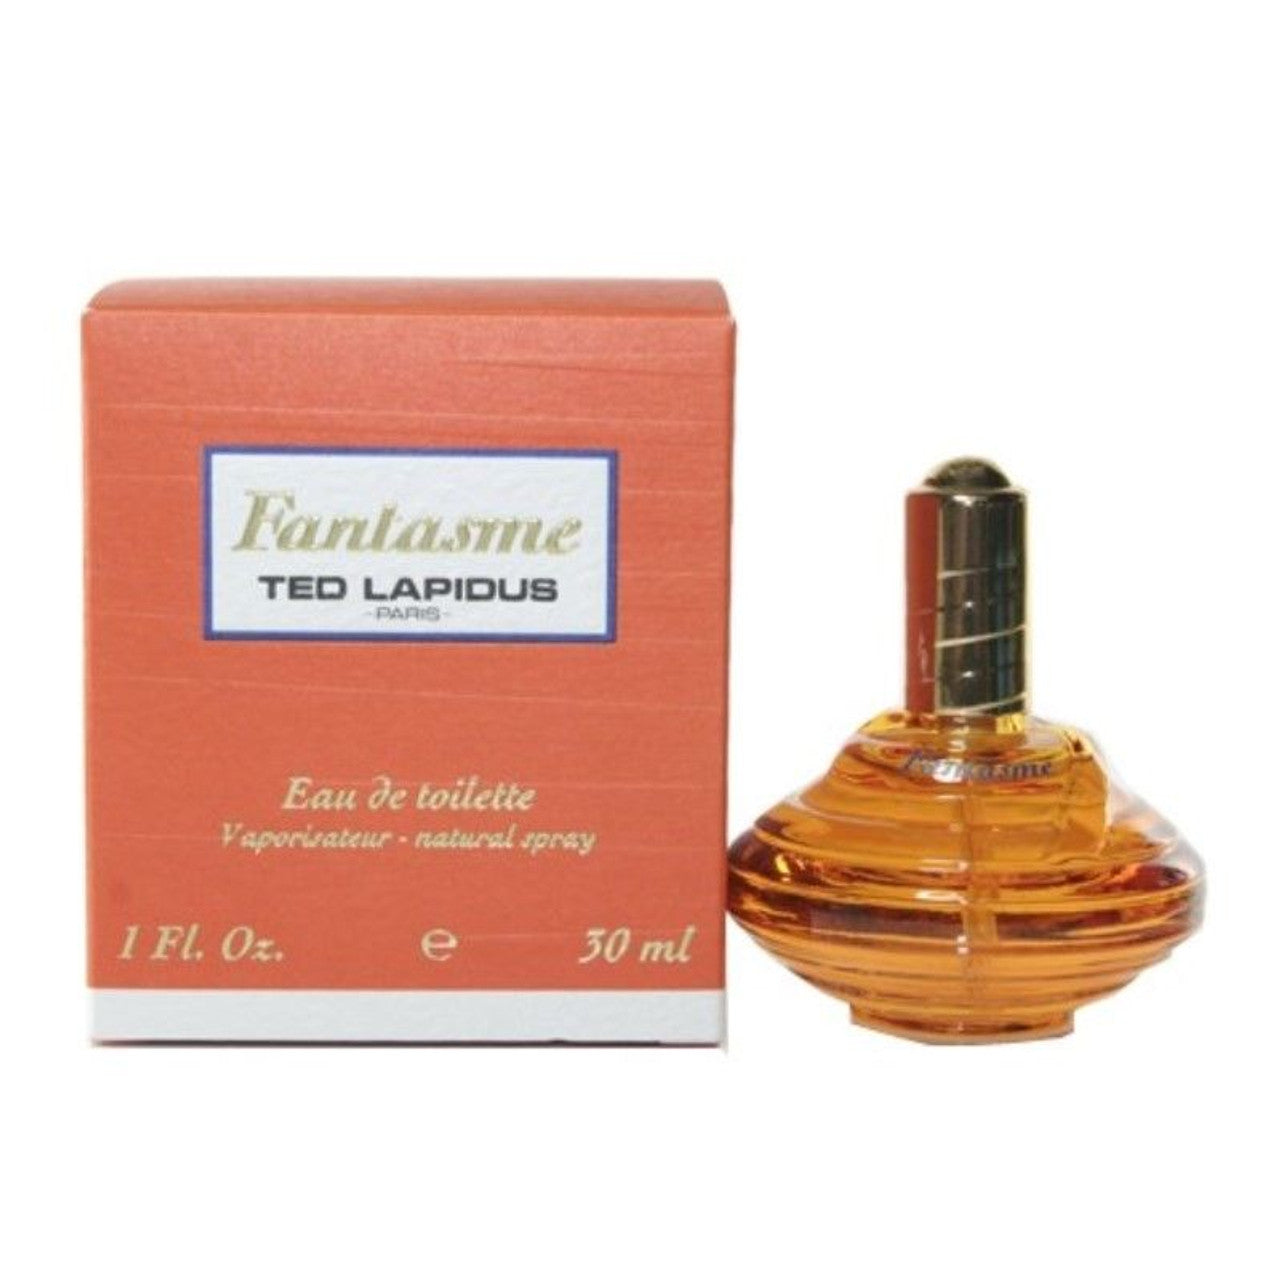 Parfums Fantasme de la marque Ted Lapidus pour femme 100 ml